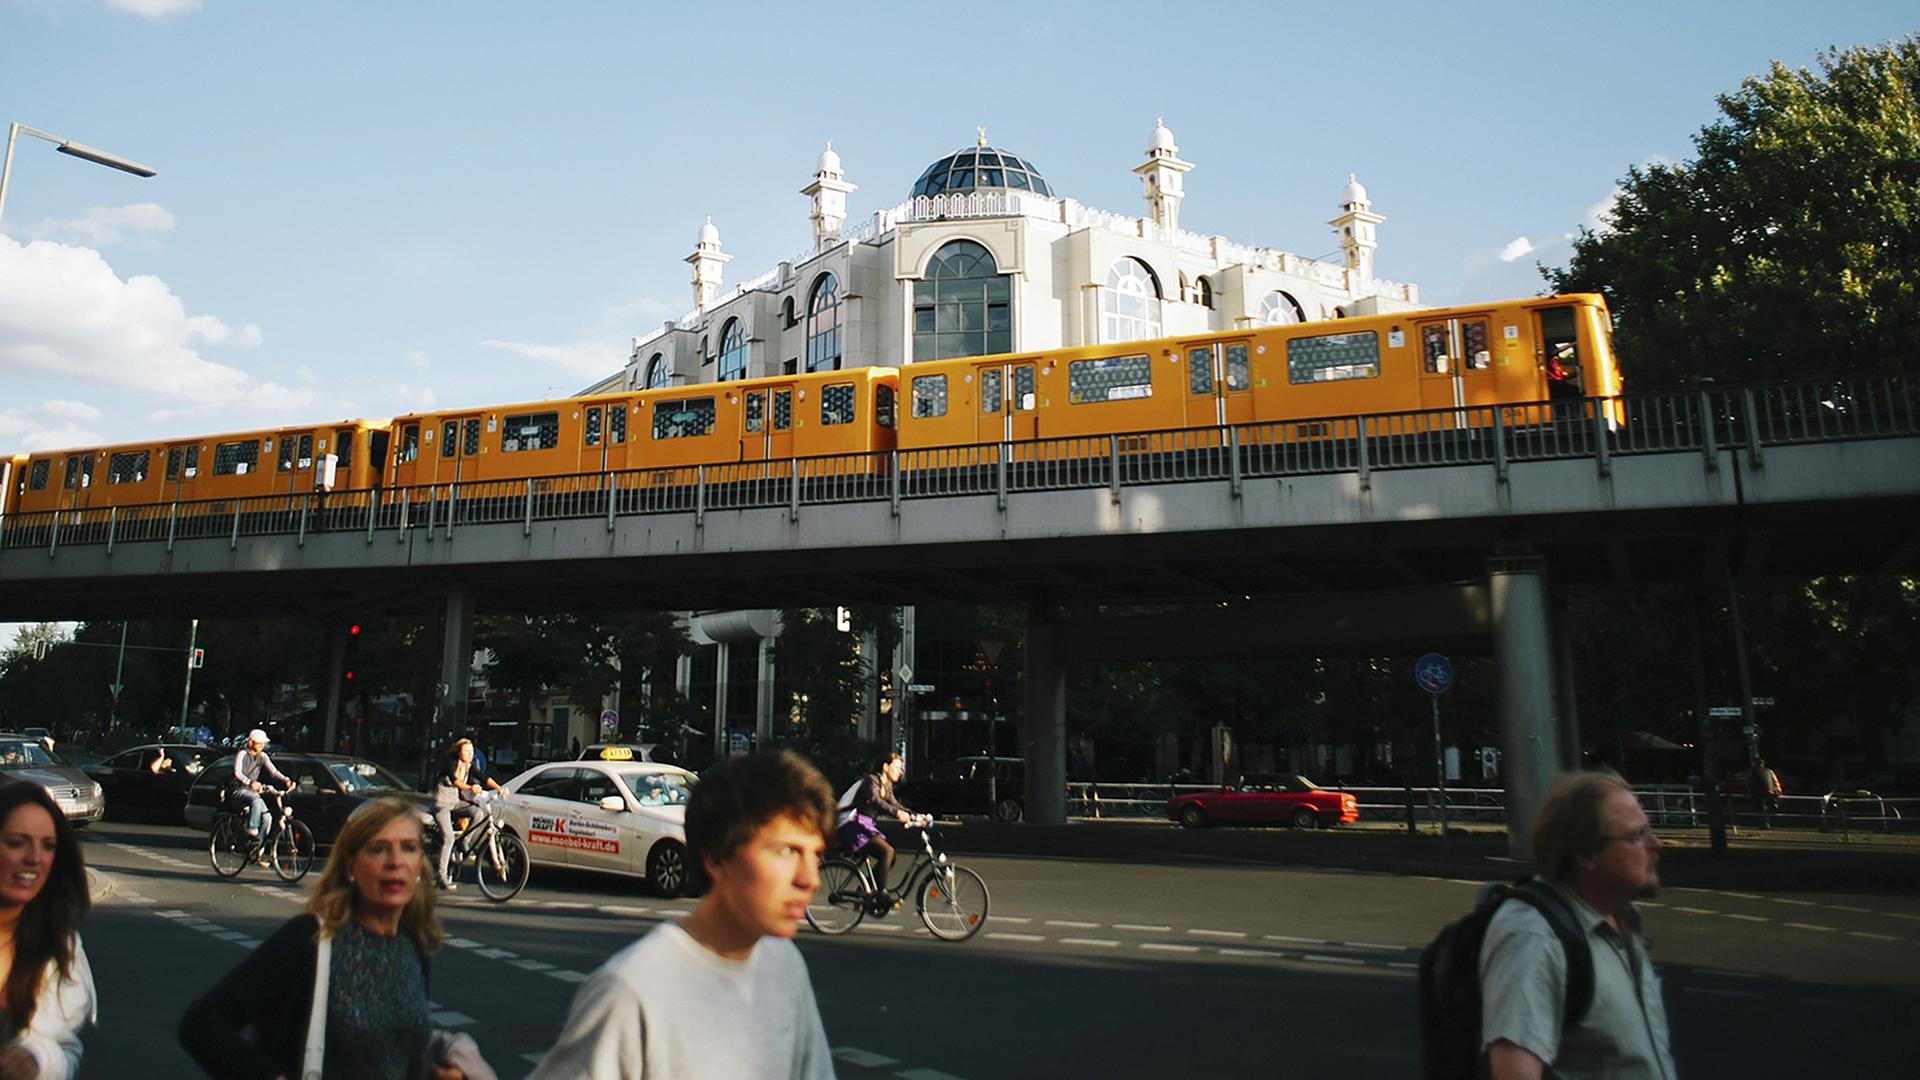 Im Vordergrund fährt die typisch gelbe Berliner U-Bahn, dahinter ist die Omar-ibn-Al-Khattab Moschee, ein weißes Eckgebäude, zu sehen.